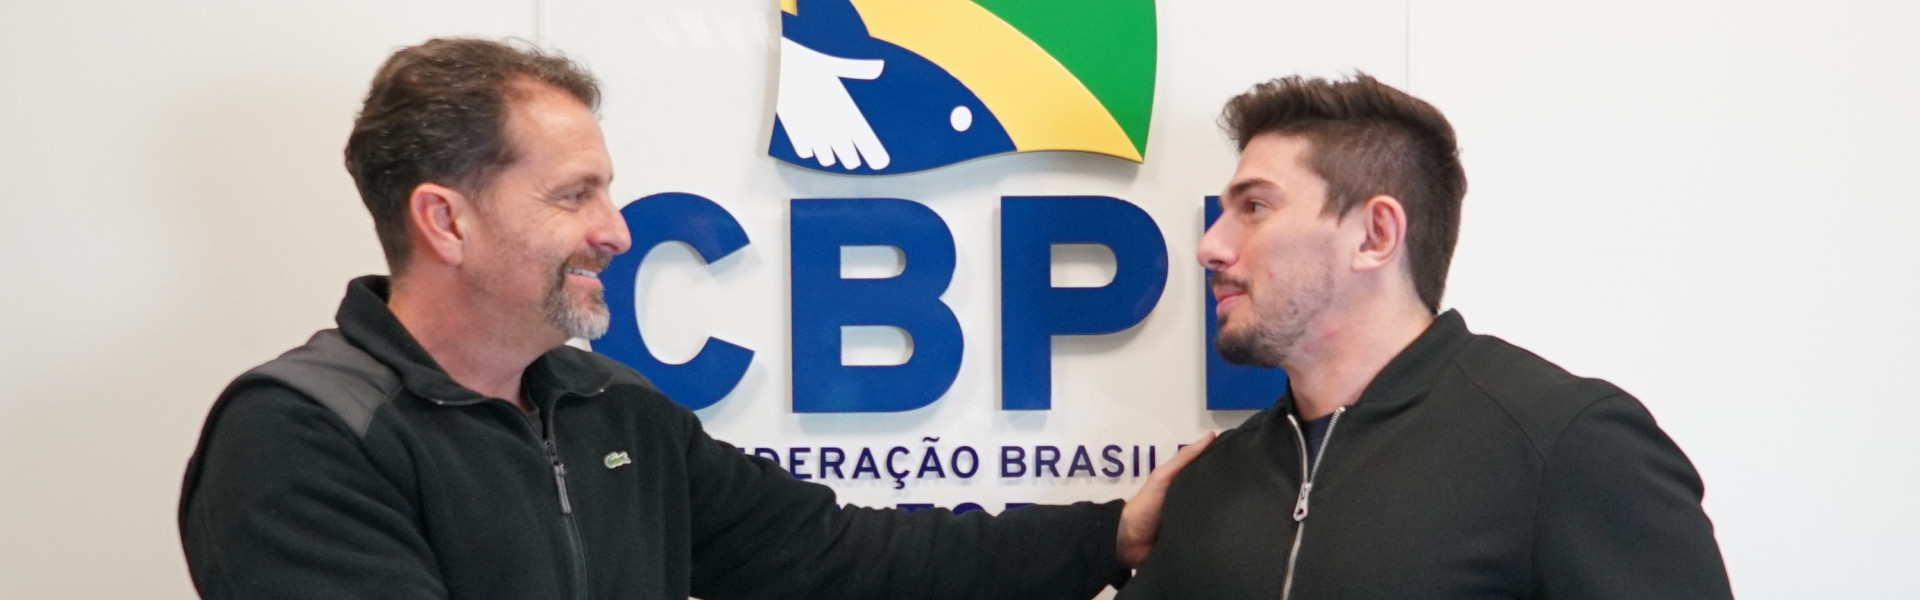 Fish TV e CBPE assinam Termo de Cooperação para o Campeonato Brasileiro em Pesqueiros